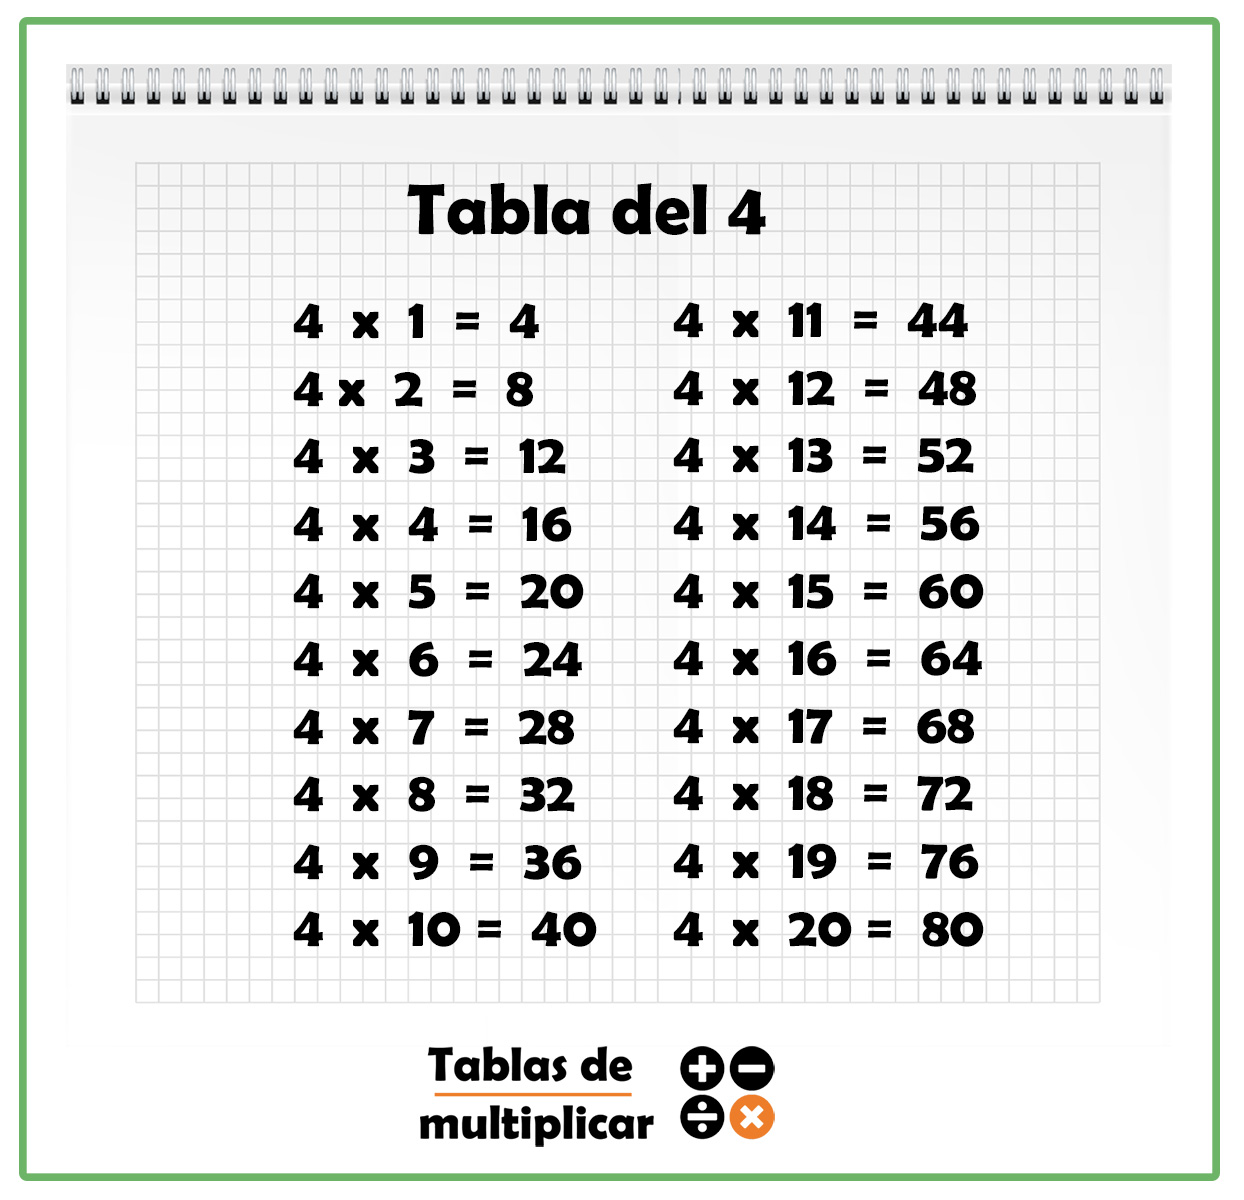 La Tabla Del 4 Tabla del 4 - Aprende las tablas de multiplicar